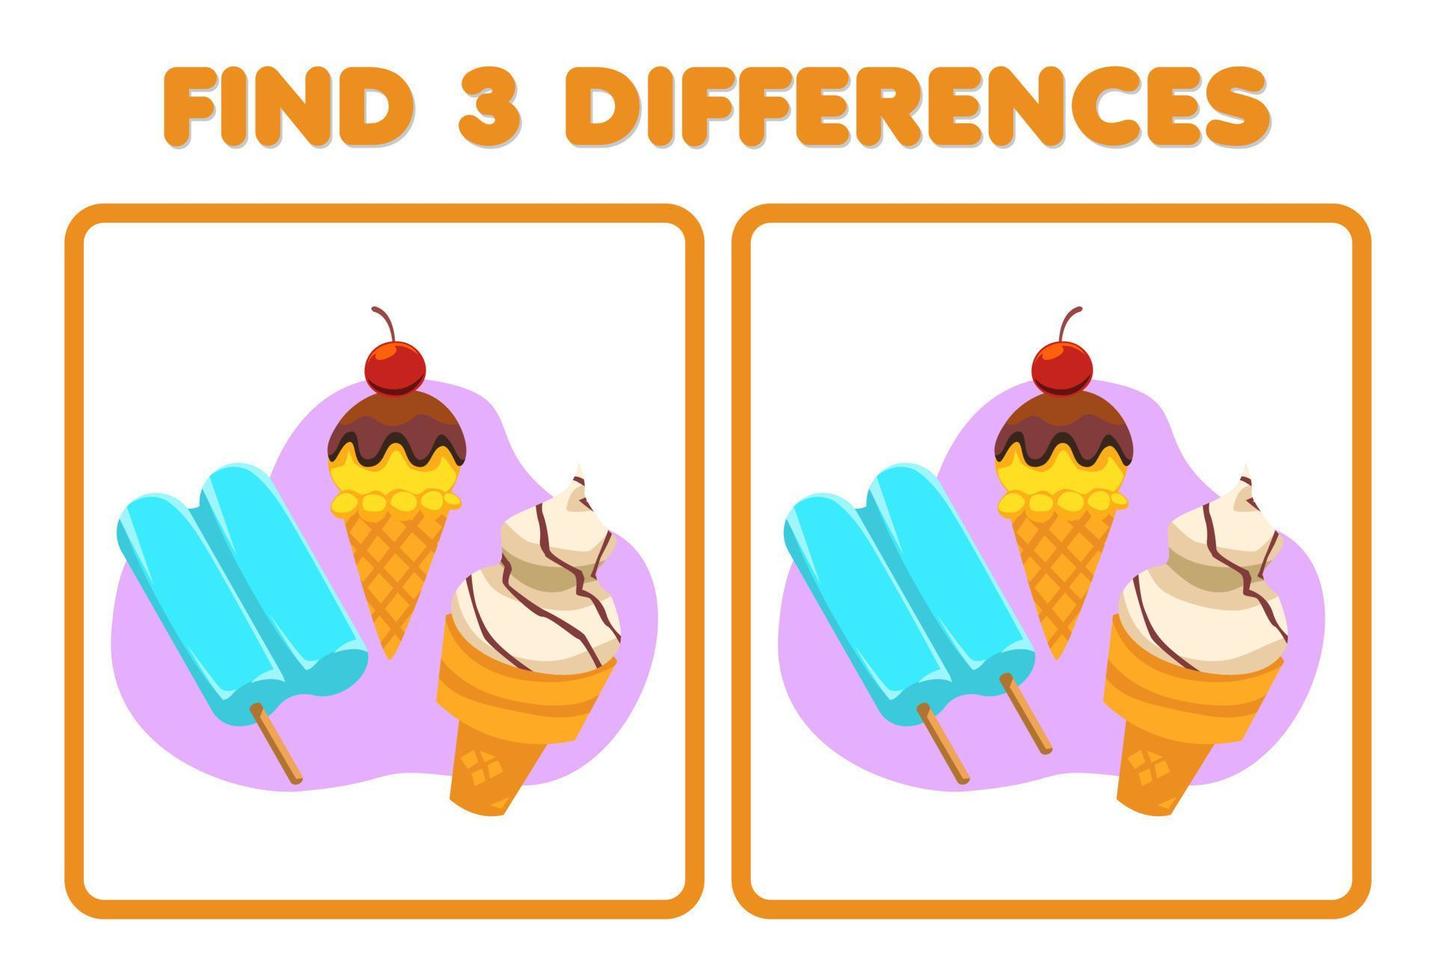 jogo de educação para crianças encontre a imagem diferente em cada linha  alimentos sorvete picolé 9467694 Vetor no Vecteezy